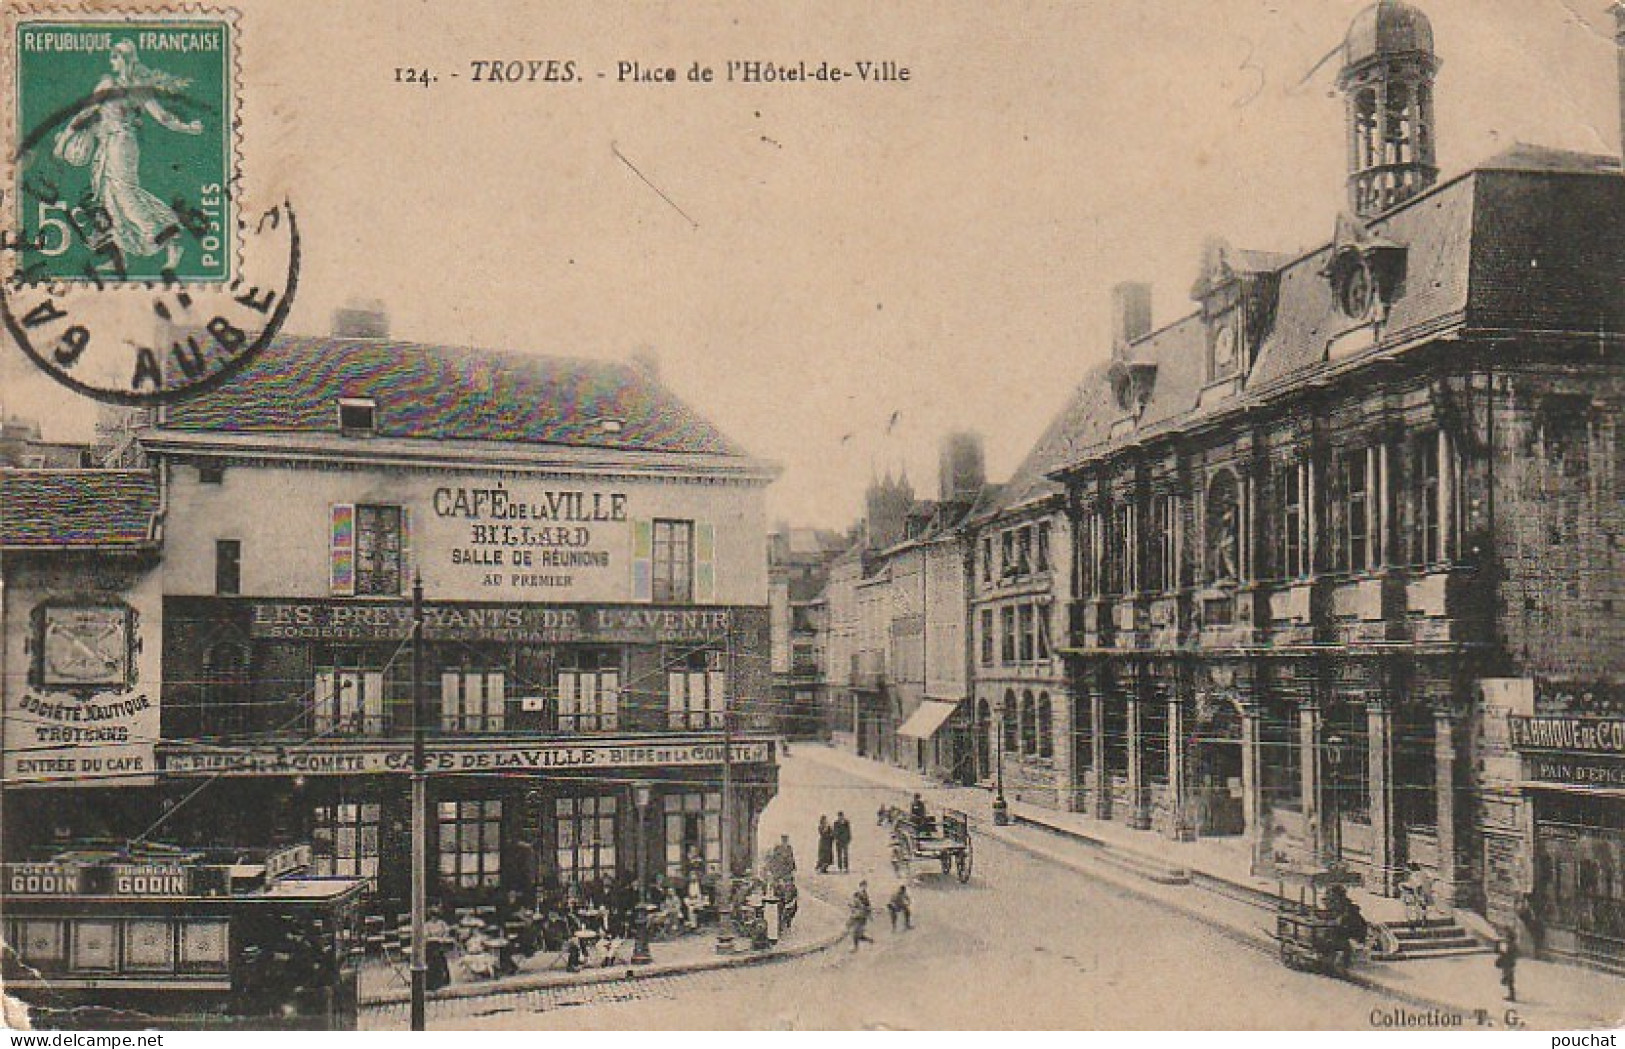 OP 17-(10)TROYES - PLACE DE L' HOTEL DE VILLE - CAFE DE LA VILLE - TRAMWAY - MARCHAND AMBULAND  - 2 SCANS - Troyes